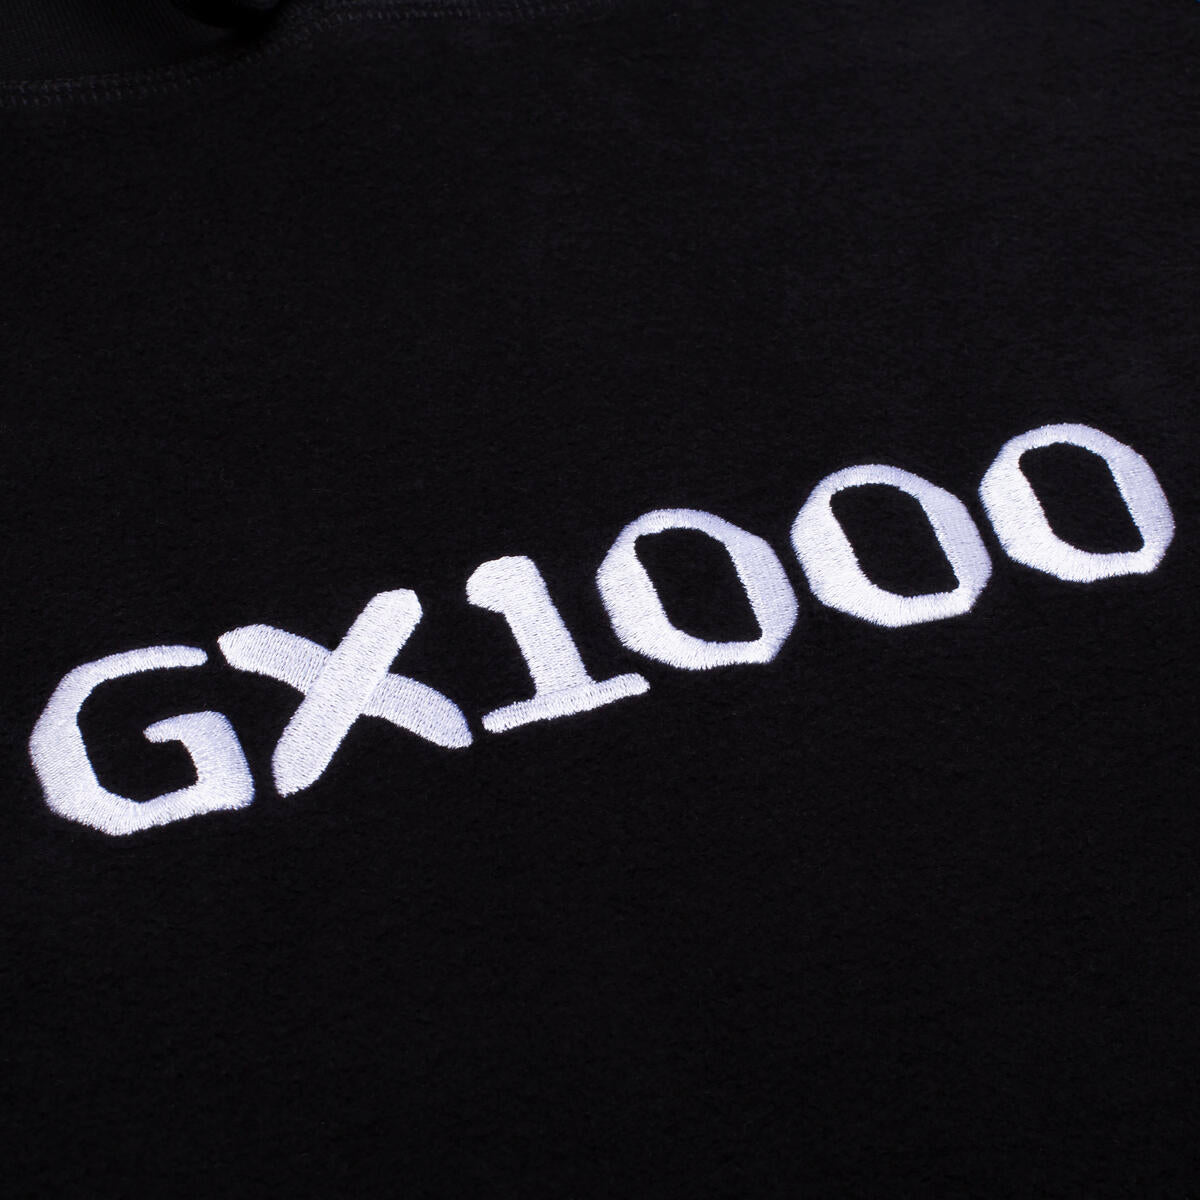 GX1000 - OG Logo Inside Out Hoodie Black